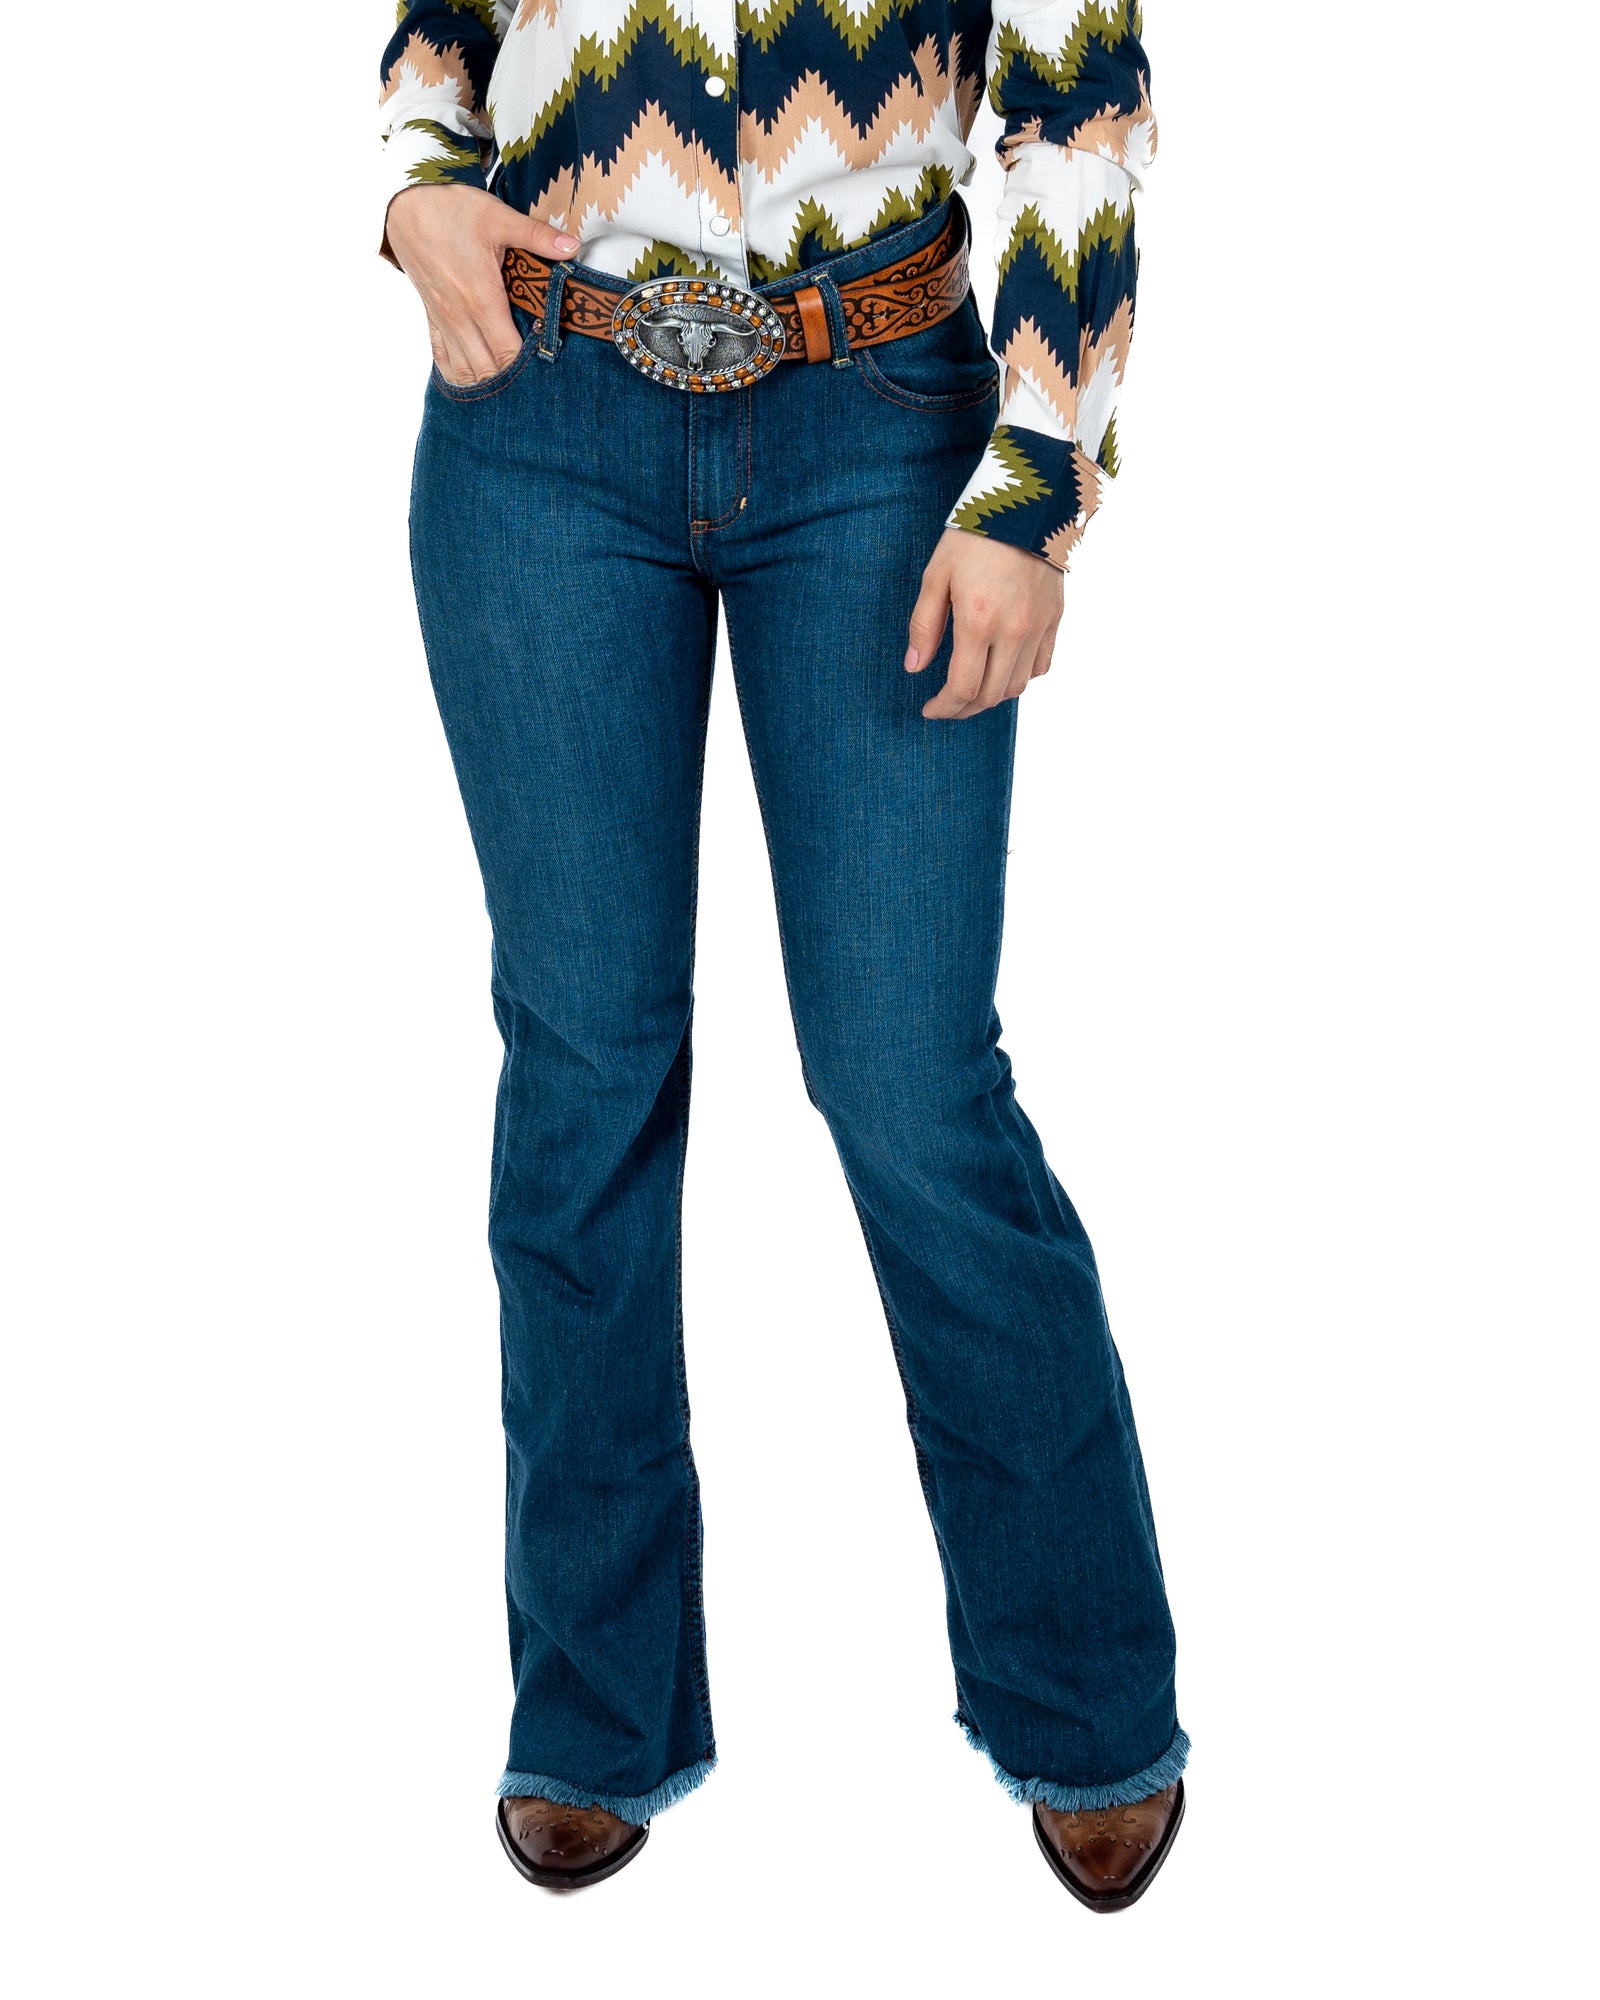 Jeans Wrangler Cintura Alta Dama – Botas Chicho